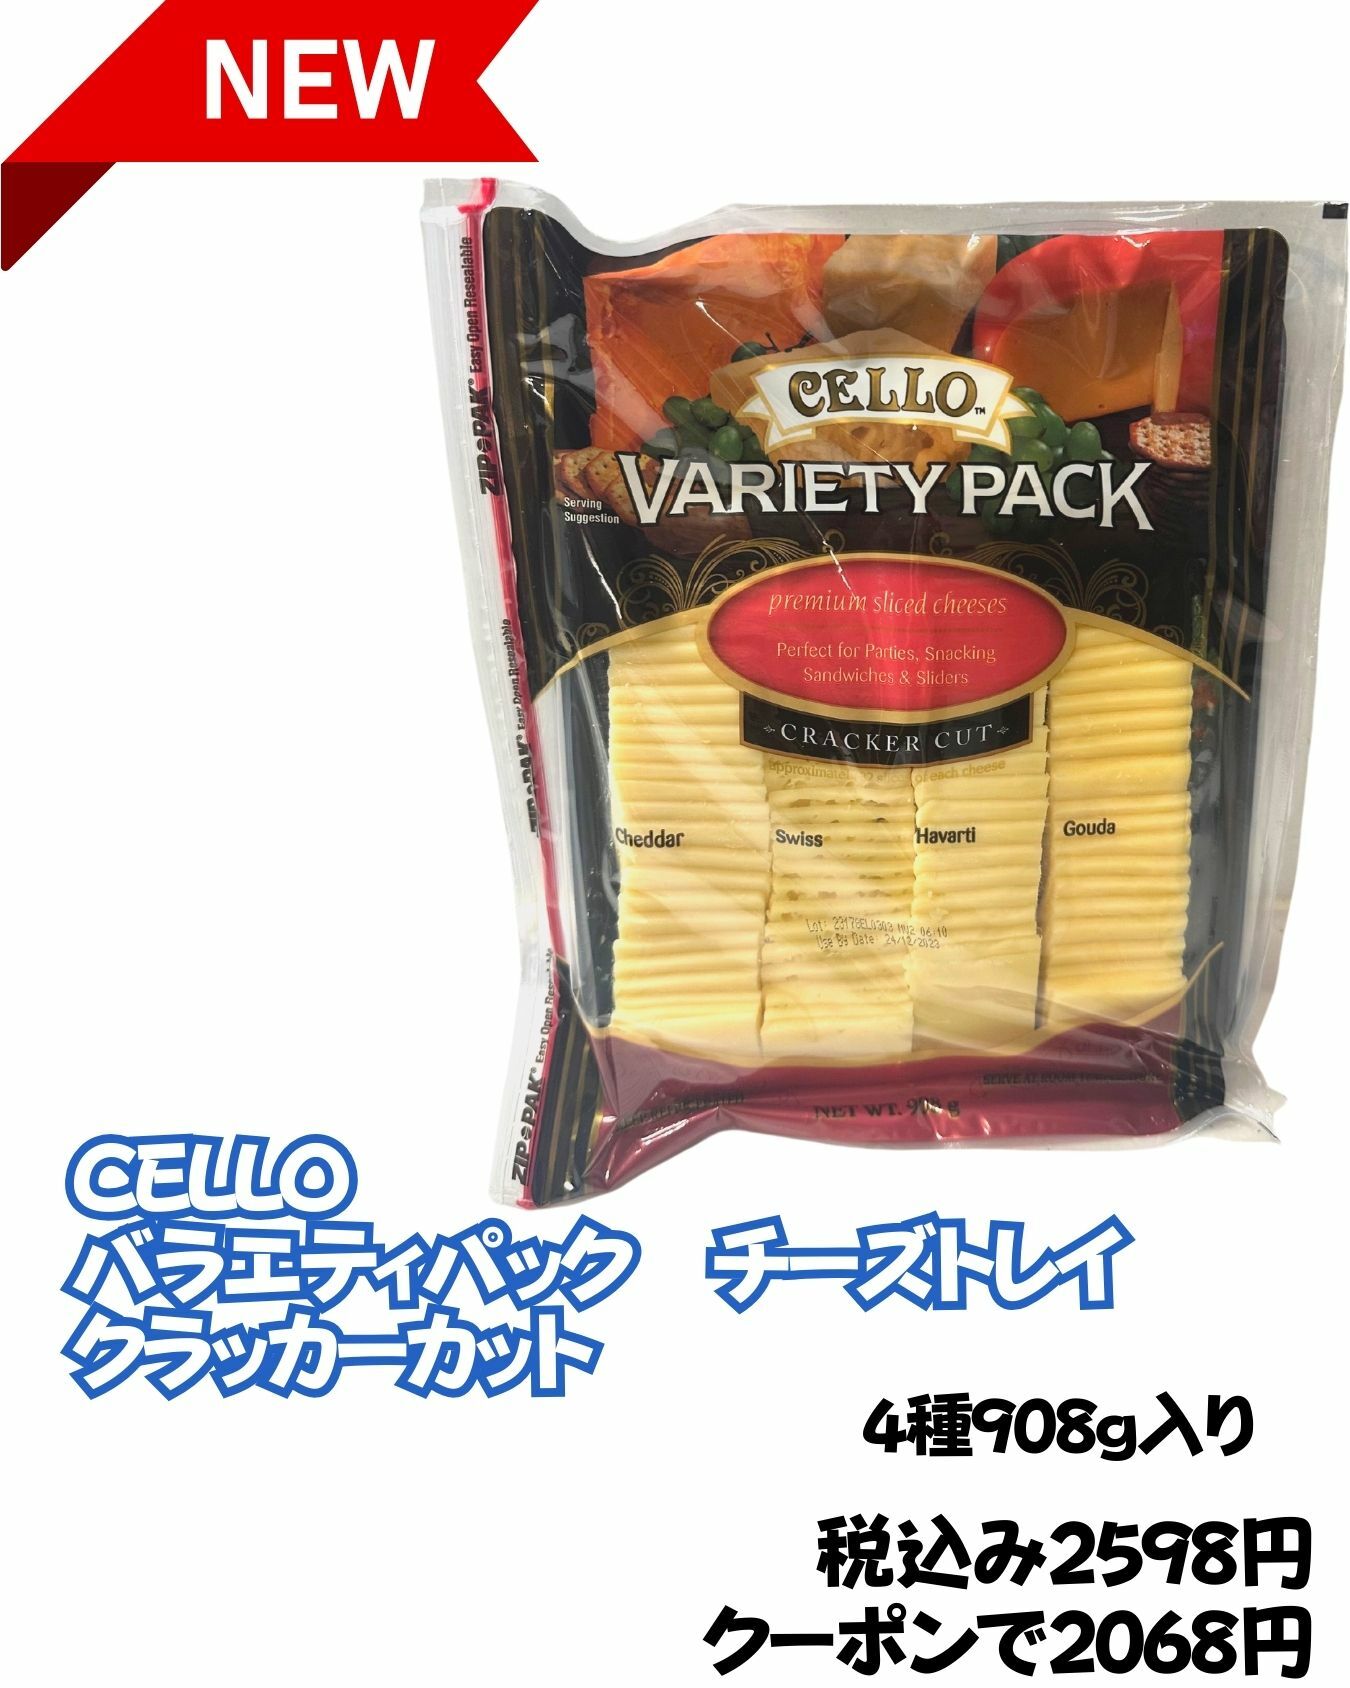 【コストコ】新商品CELLOのチーズトレイクラッカーセット